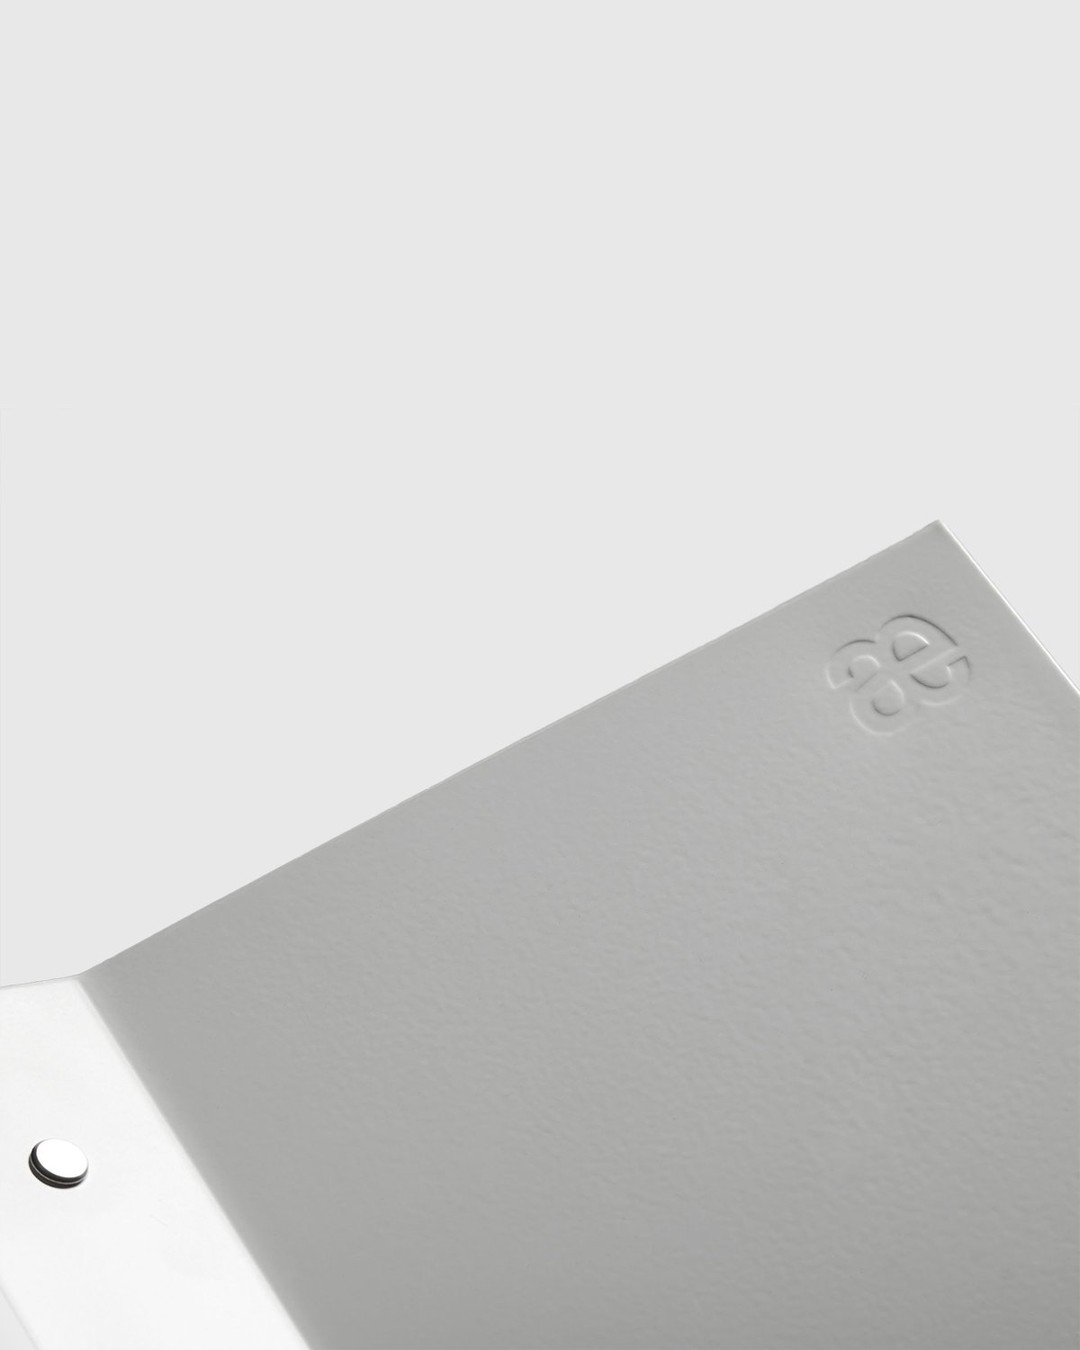 Baebsy – Atlas Bookstand White - Desk Accessories - White - Image 7